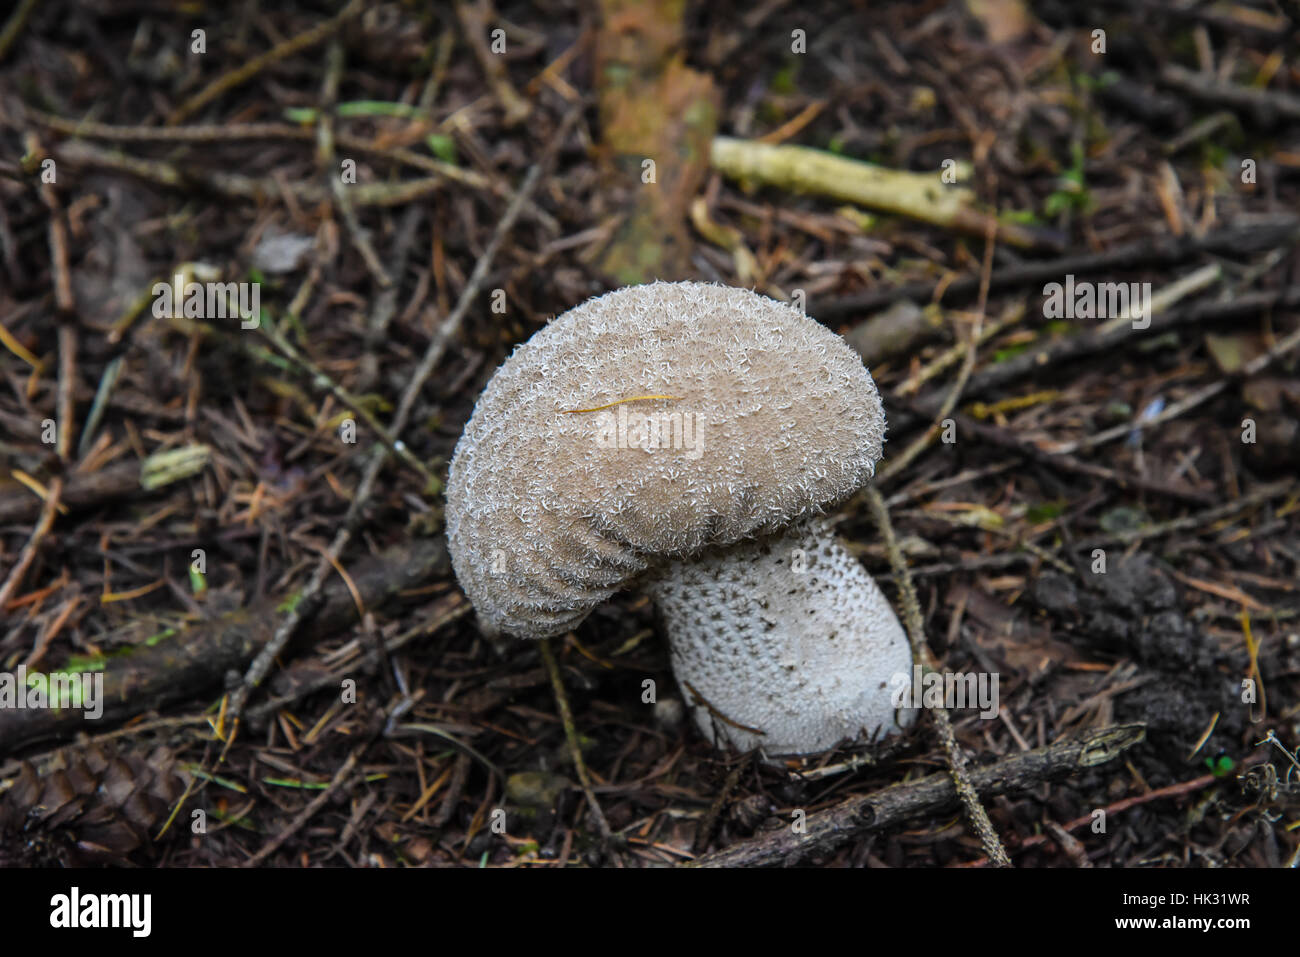 Puffball mushroom. Stock Photo